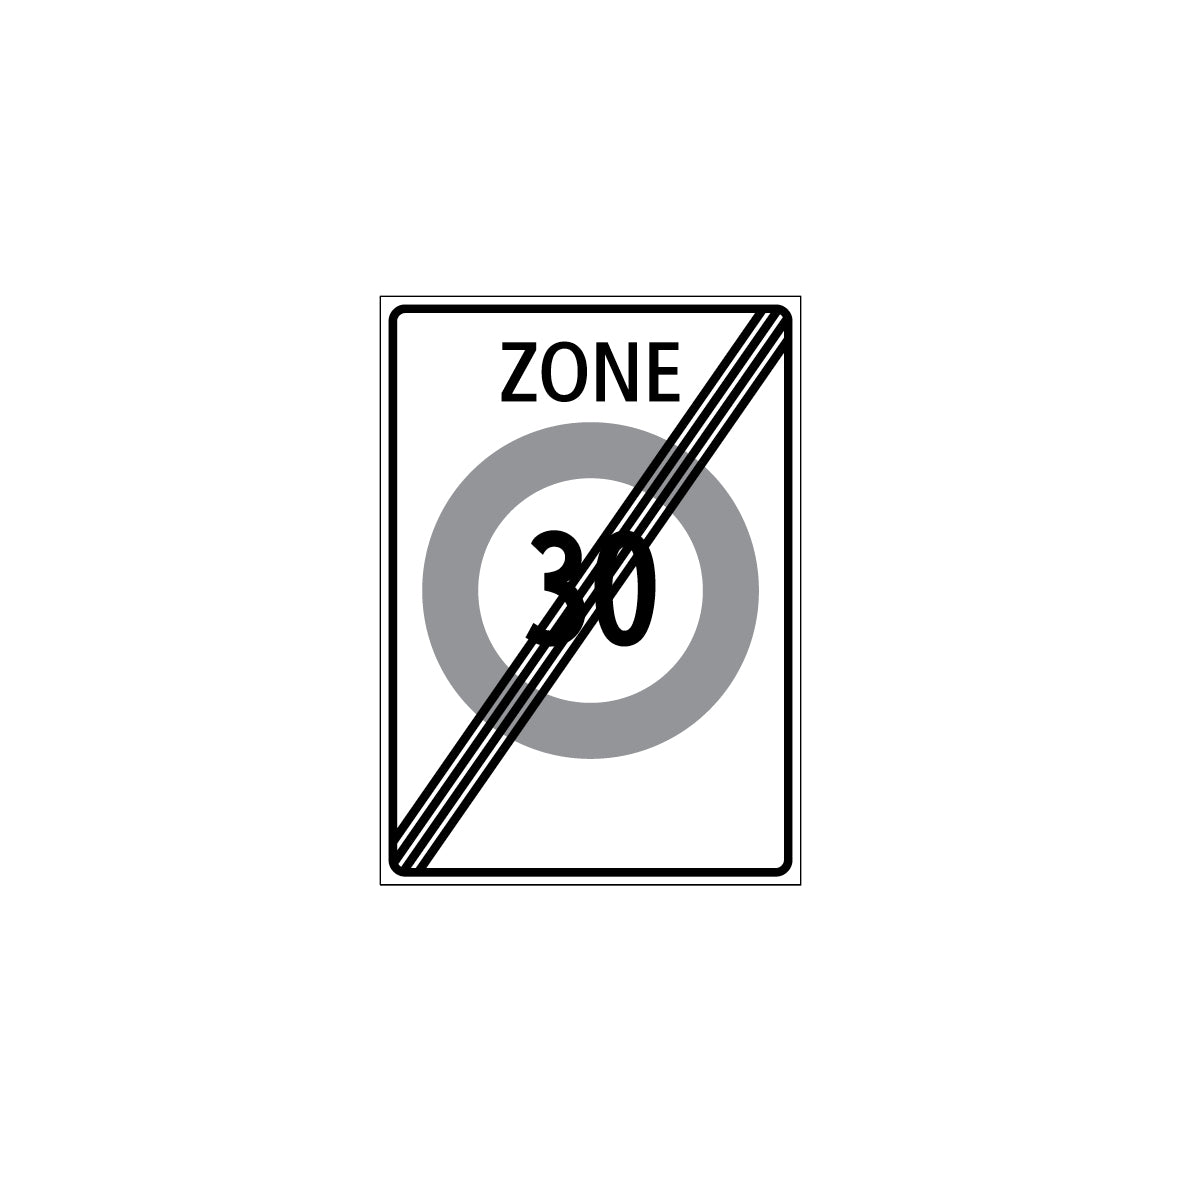 Zonensignal, Ende der Zone, 2.59.2a